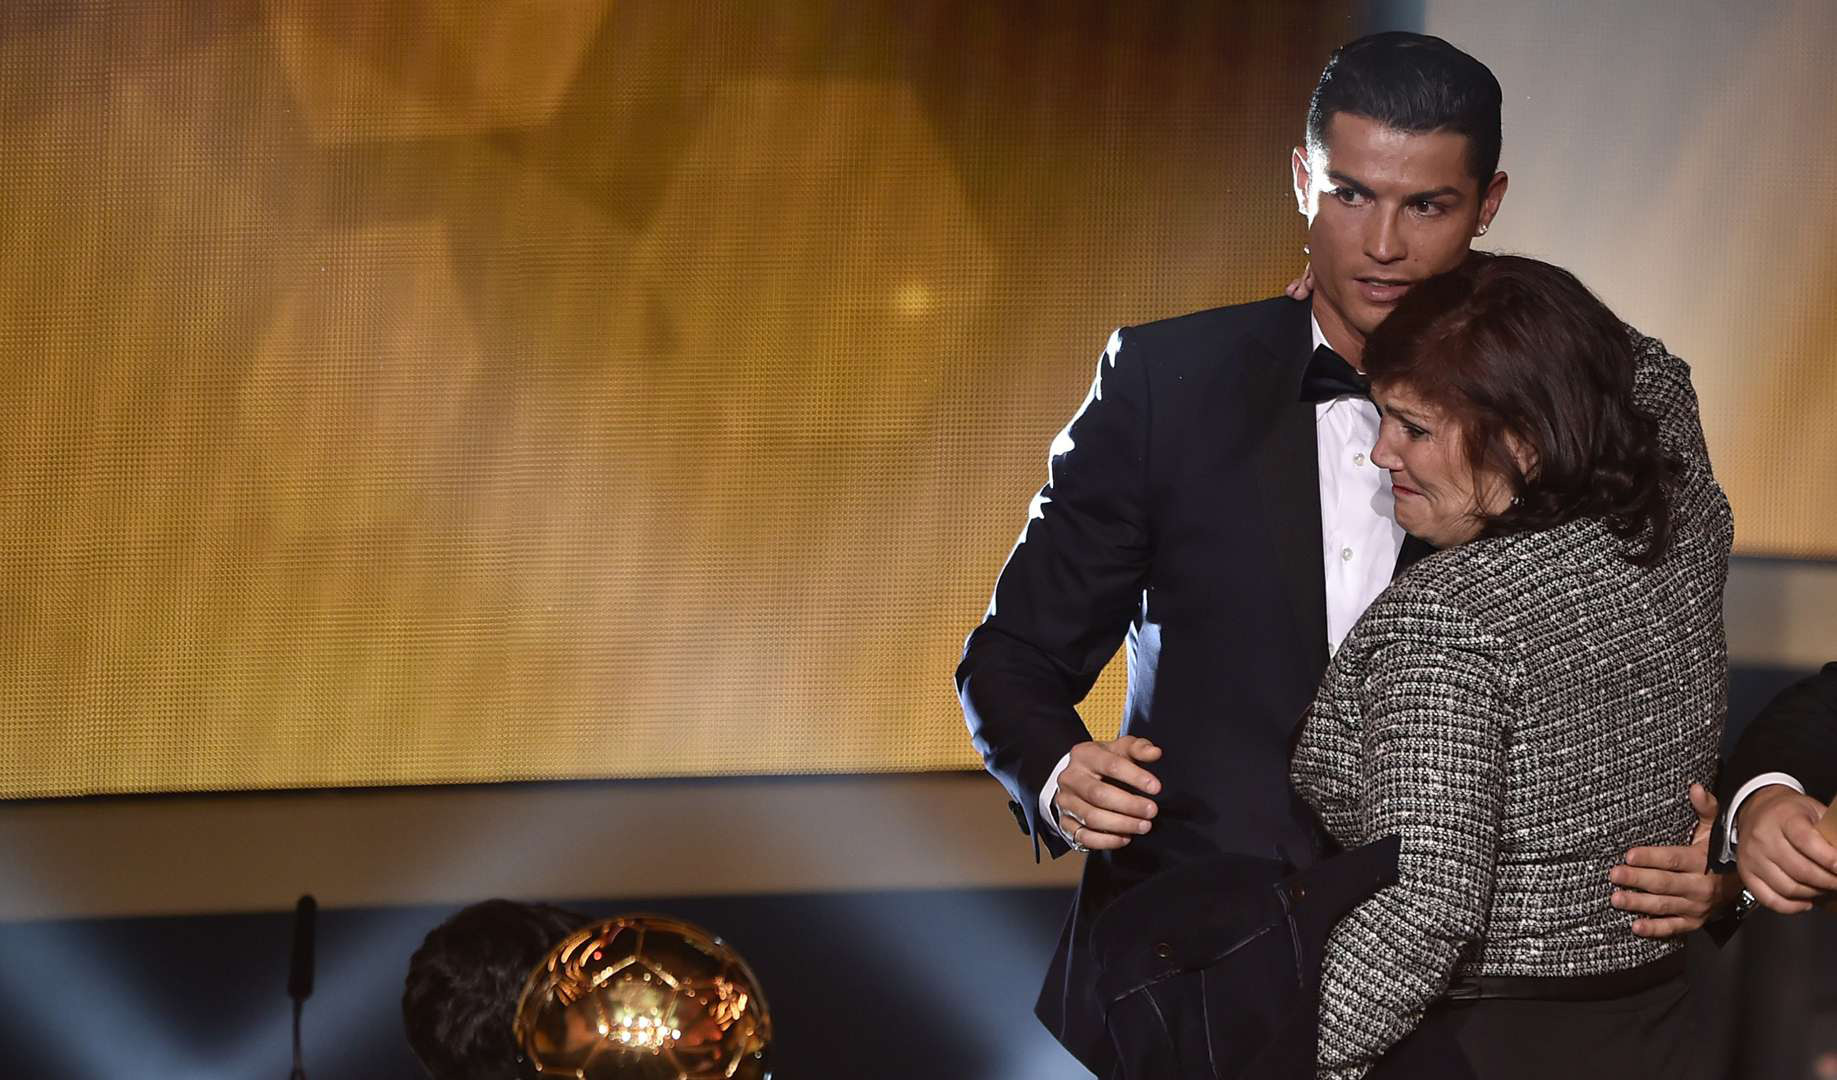 Câu chuyện đầy nước mắt về mẹ của Ronaldo, người đã chiến đấu đơn độc cả đời với số phận hẩm hiu - Ảnh 3.